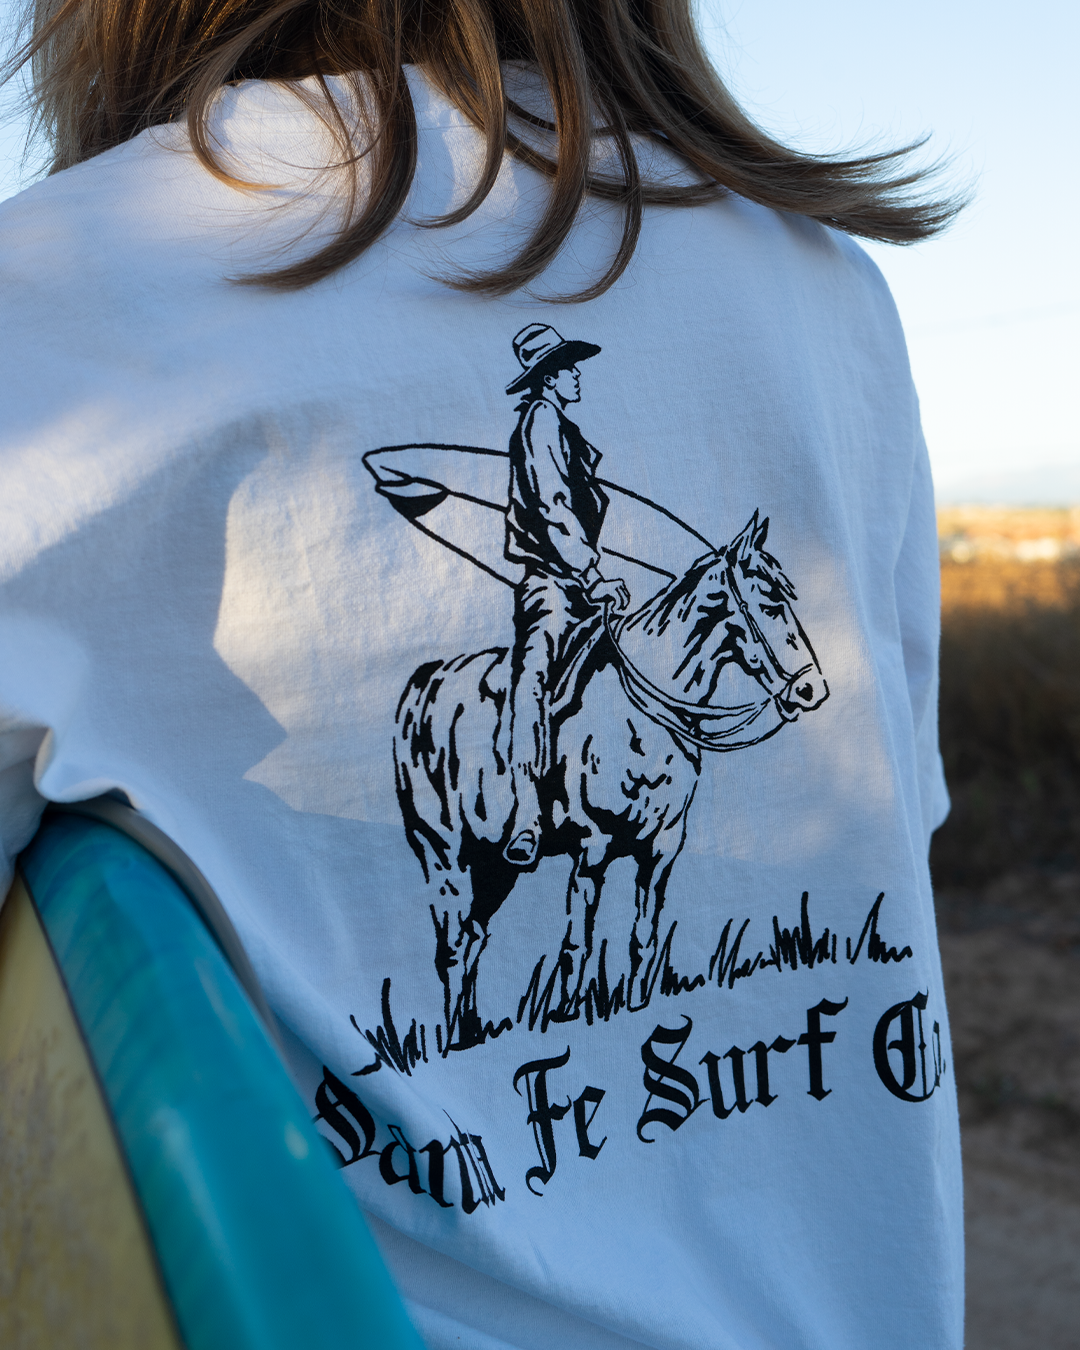 OG Cowboy Surfer T-Shirt | Santa Fe Surf Co.